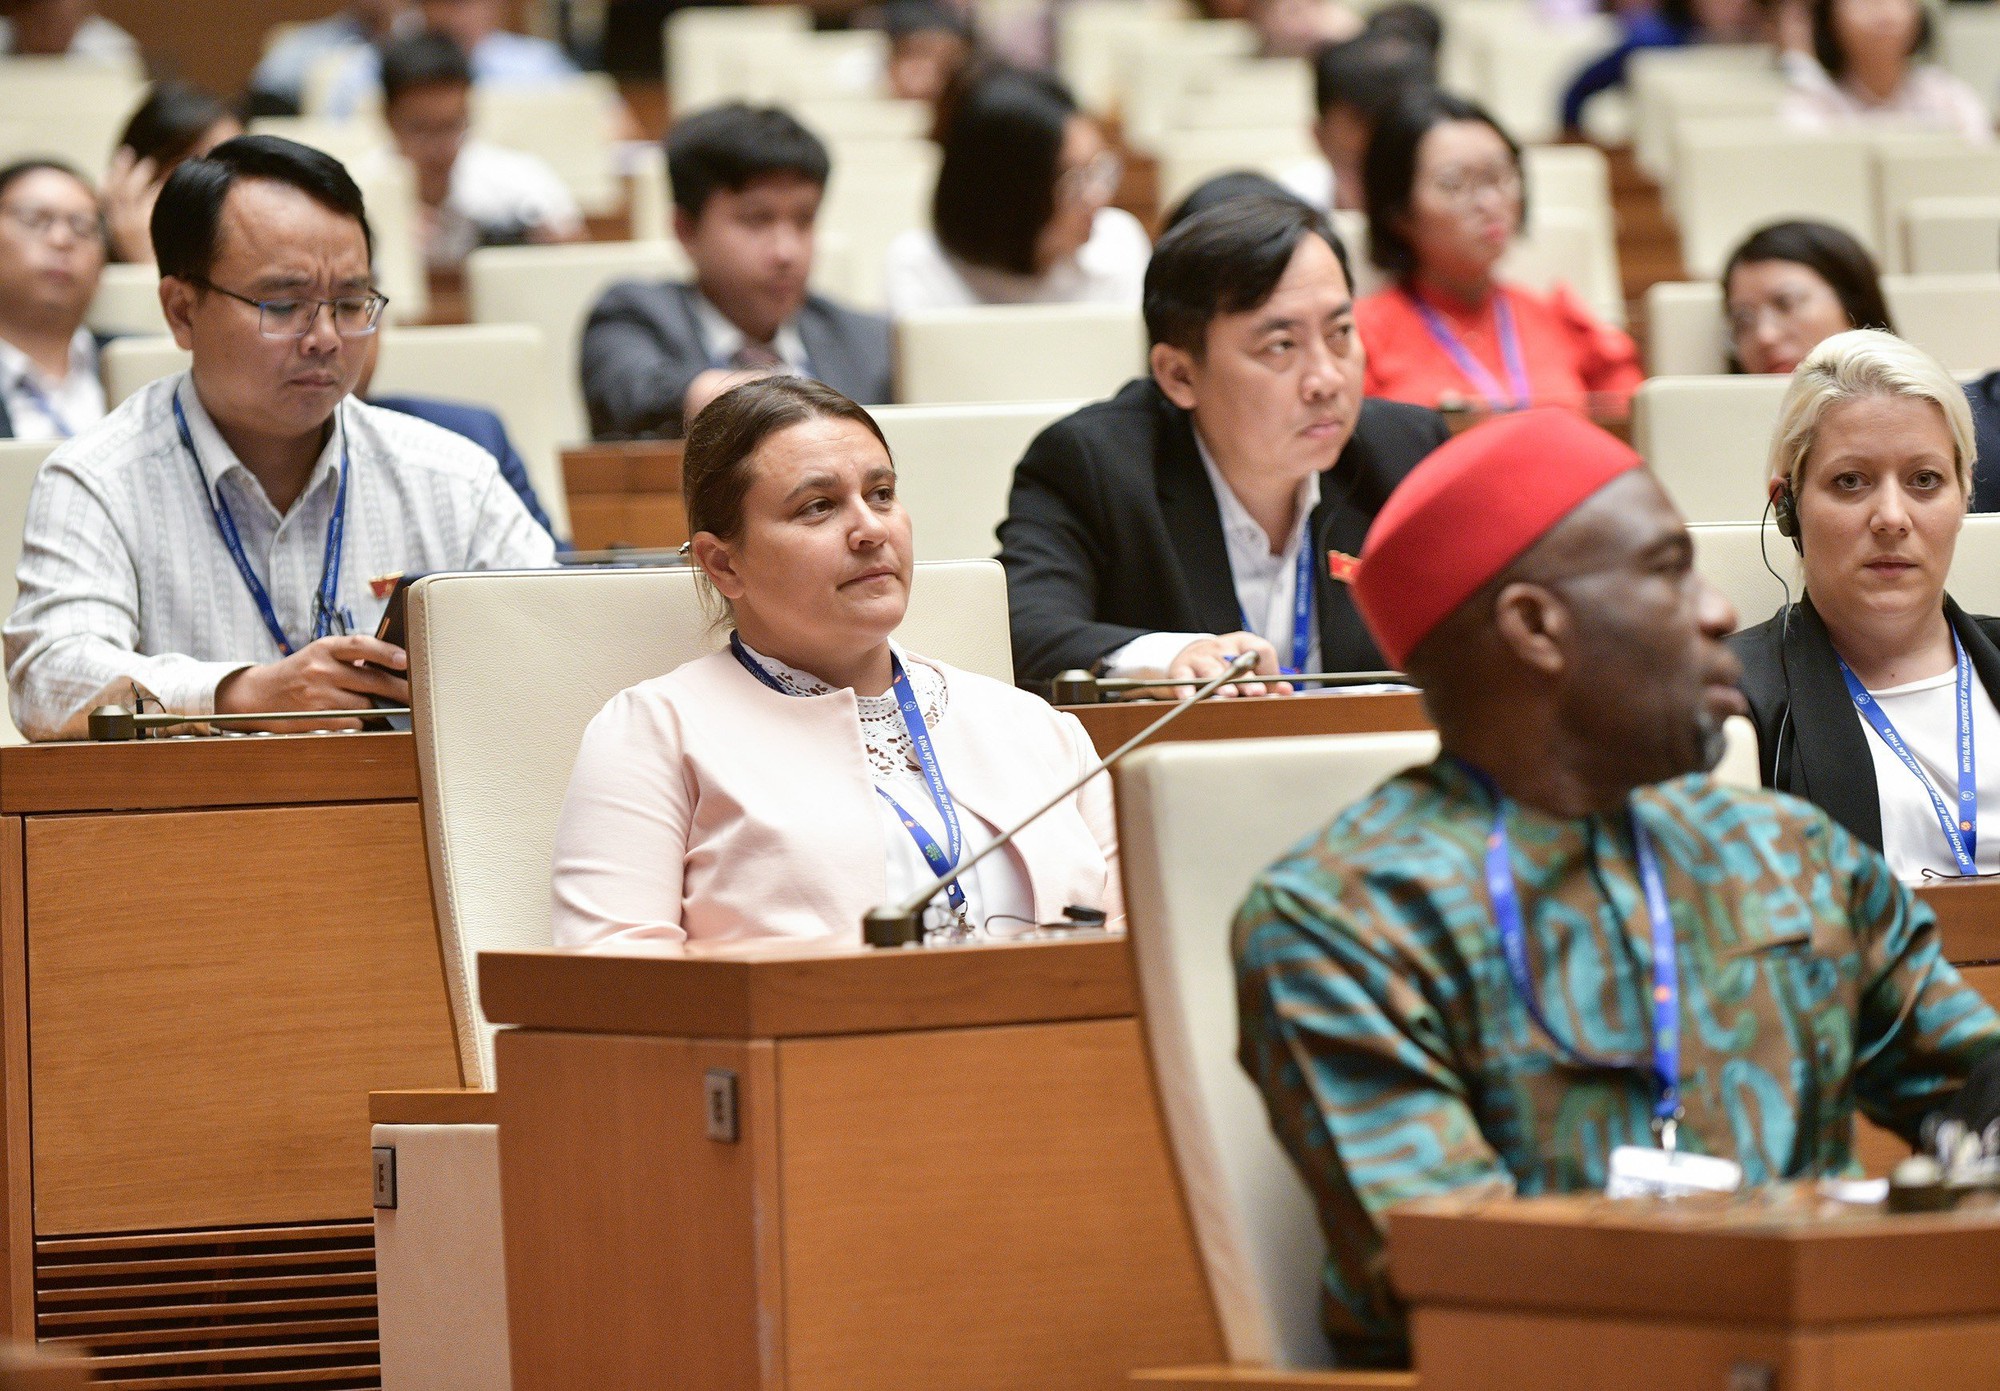 Tọa đàm “Tăng cường năng lực số cho thanh niên” – hoạt động đầu tiên trong khuôn khổ Hội nghị Nghị sỹ trẻ toàn cầu lần thứ 9 - Ảnh 6.